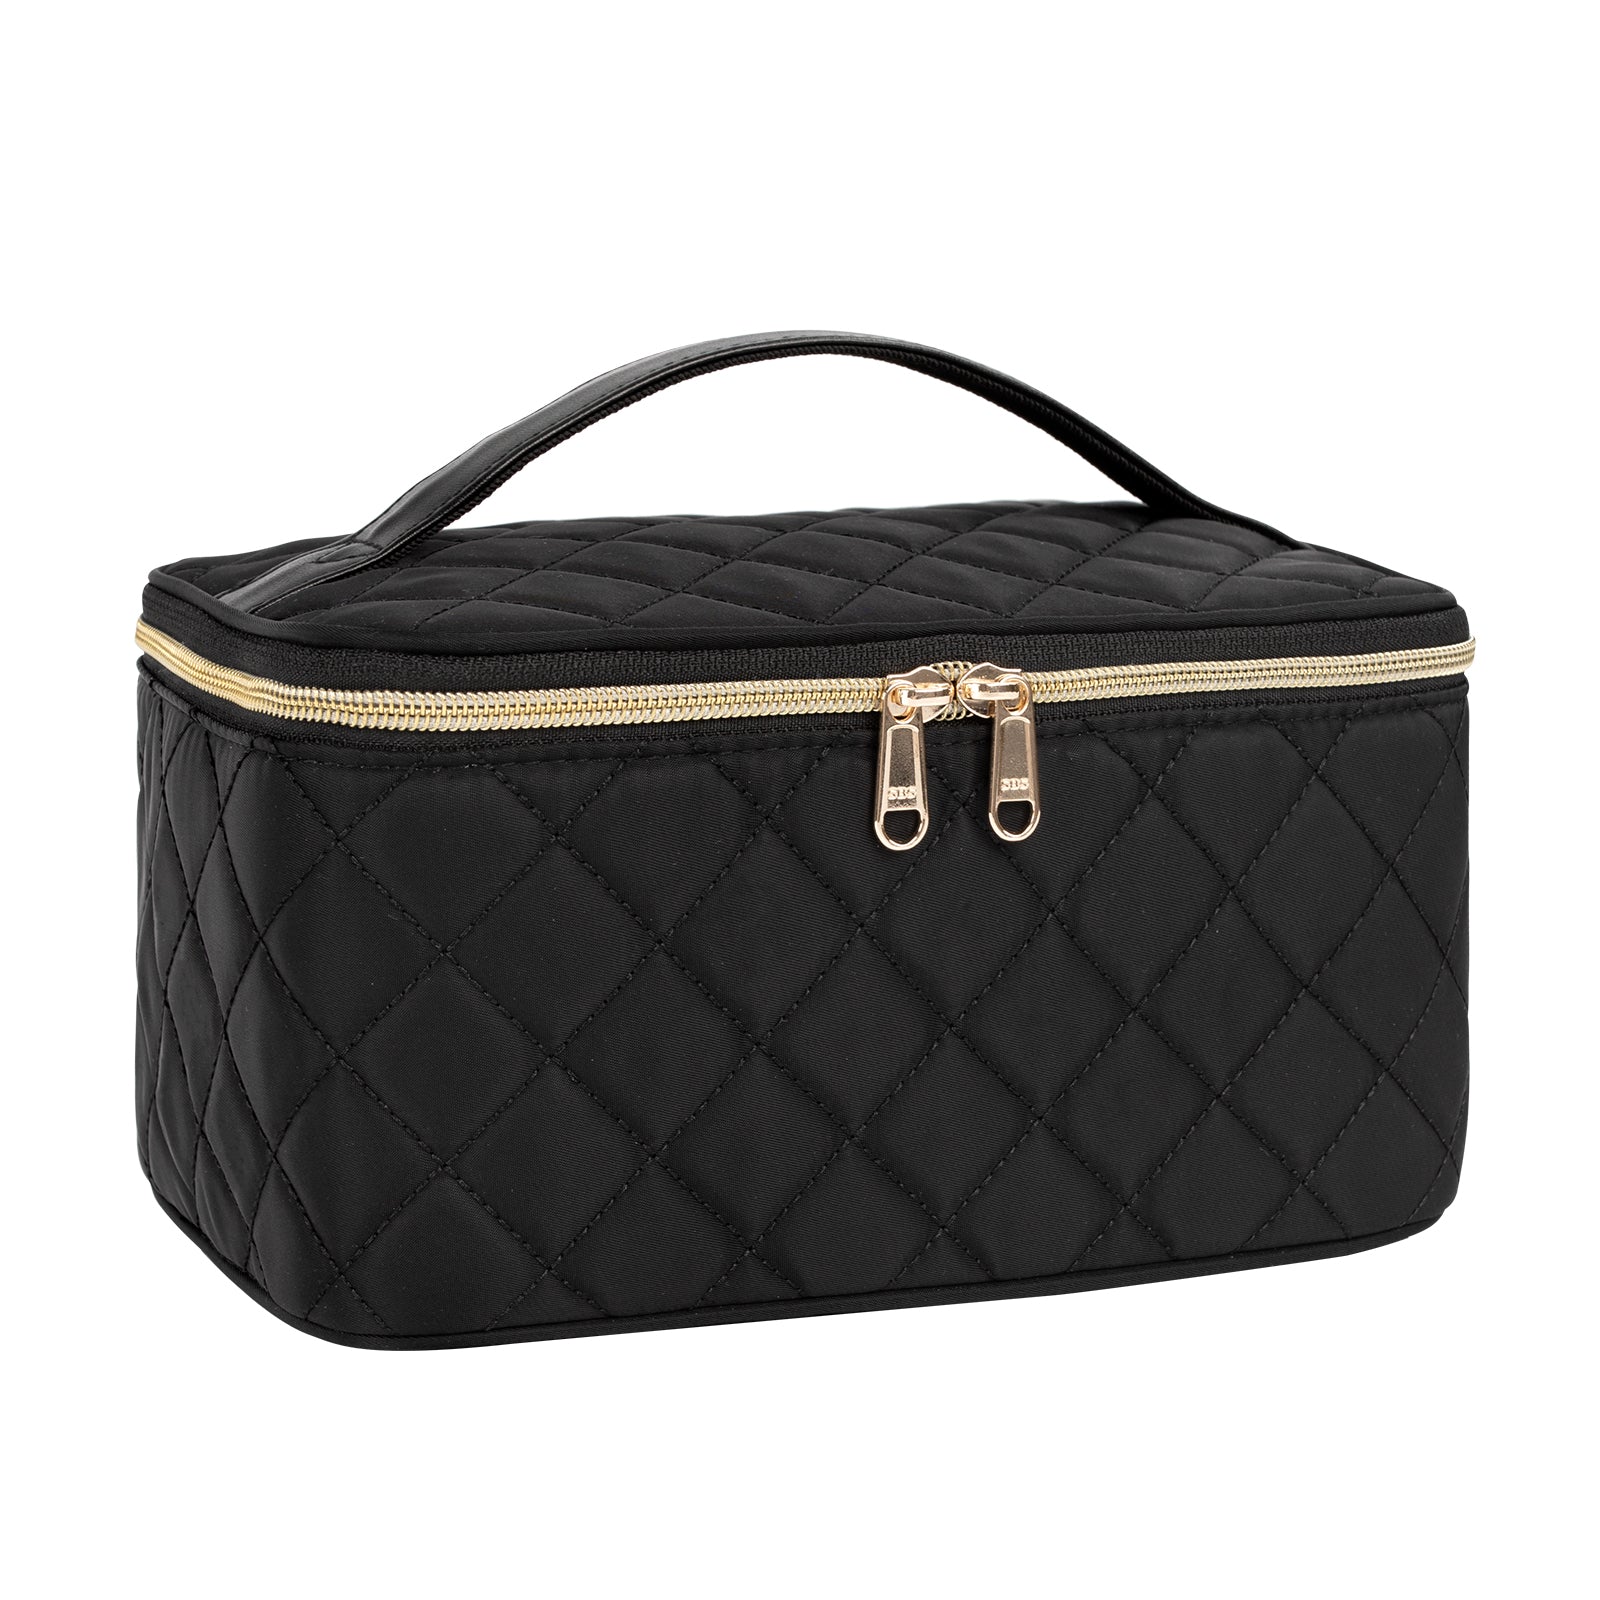 Small Black Rhombus Travel Makeup Bag – Relavel